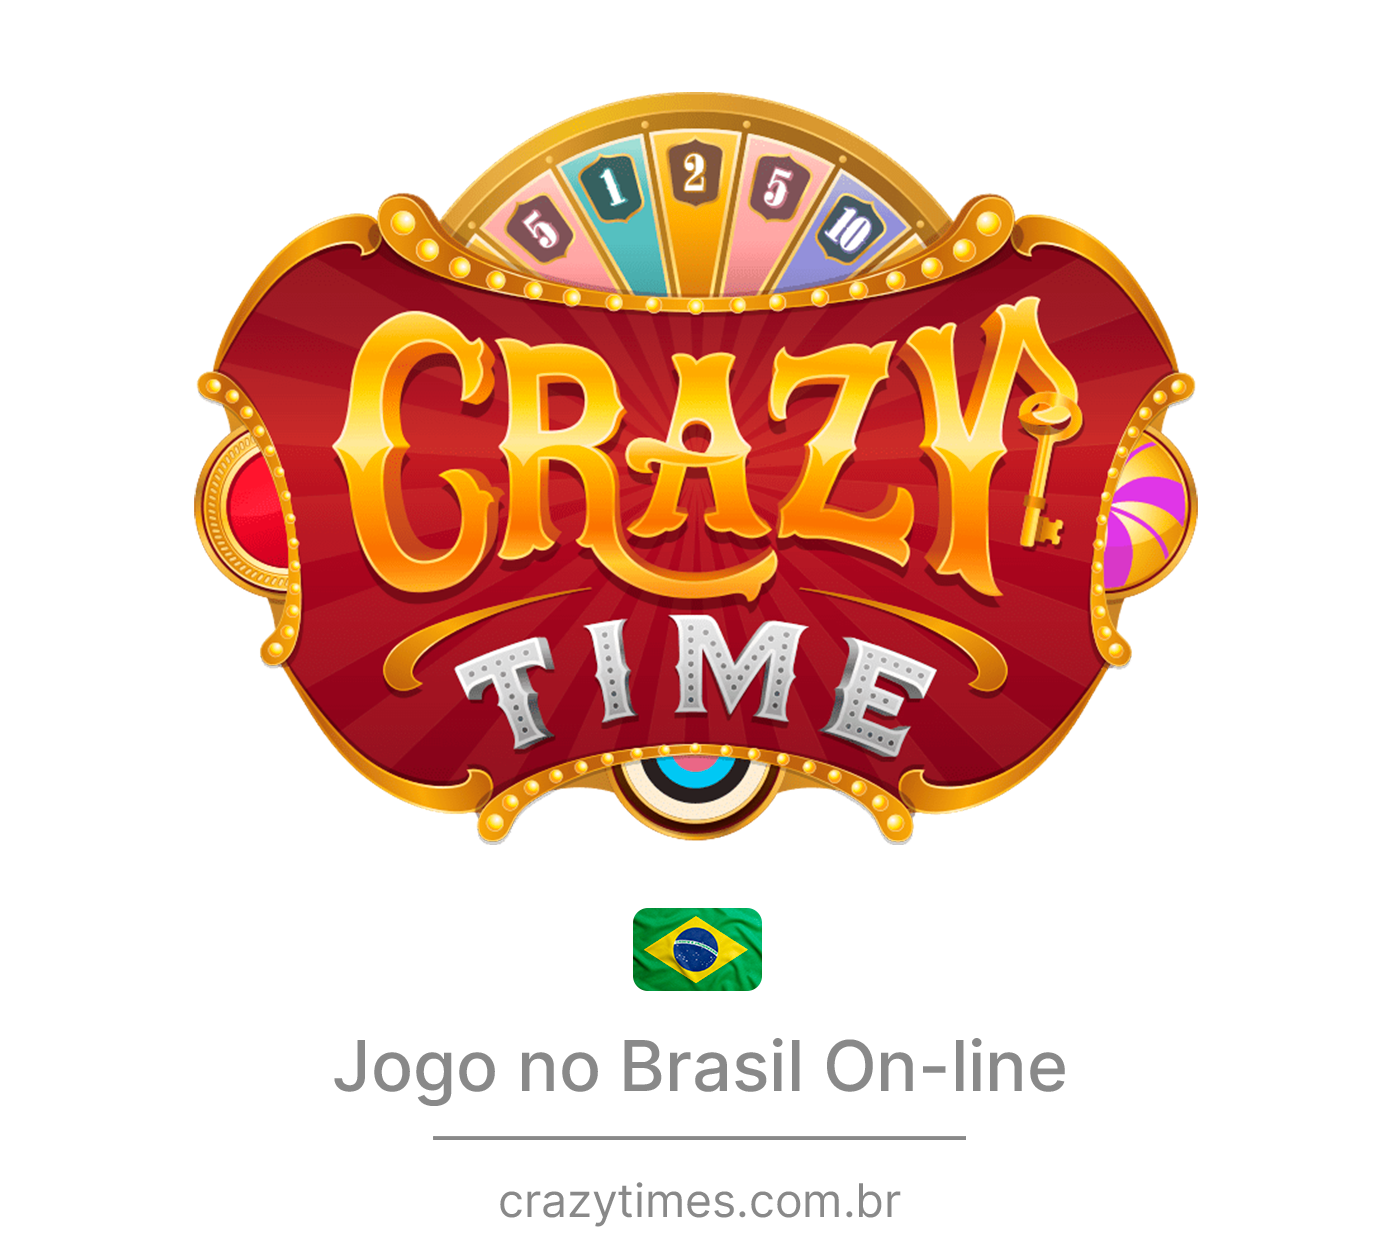 Crazy Time Jogo no Brasil